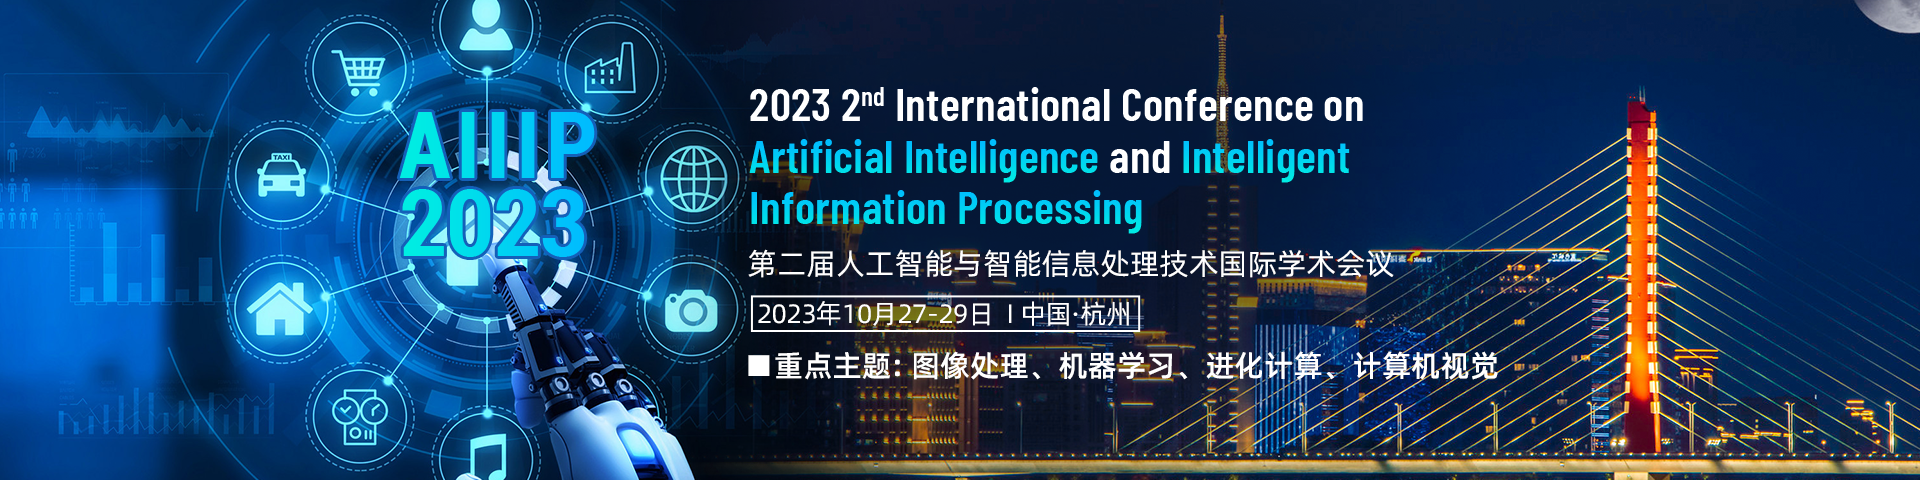 第二届人工智能与智能信息处理技术国际学术会议（AIIIP 2023）